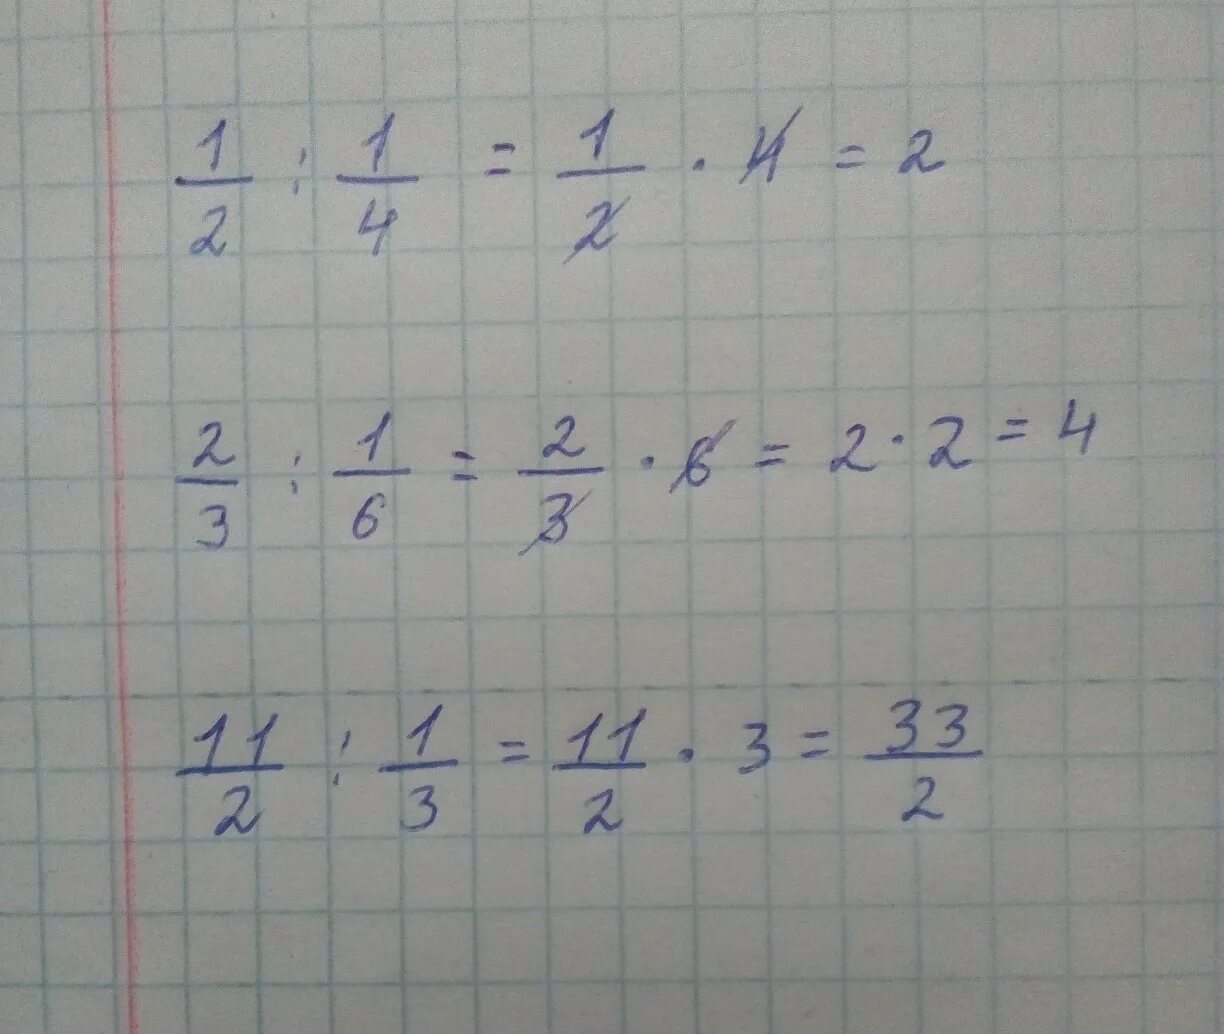 Четыре 2 нуля. (1/2-1/3):(1/3-1/4)*(3/2). 2 1/2*6+3 1/3. (1/2-1/3):(1/3-1/4)*(3/2)=Пошагово. 2 2/3×3,5÷ 3 1/3.